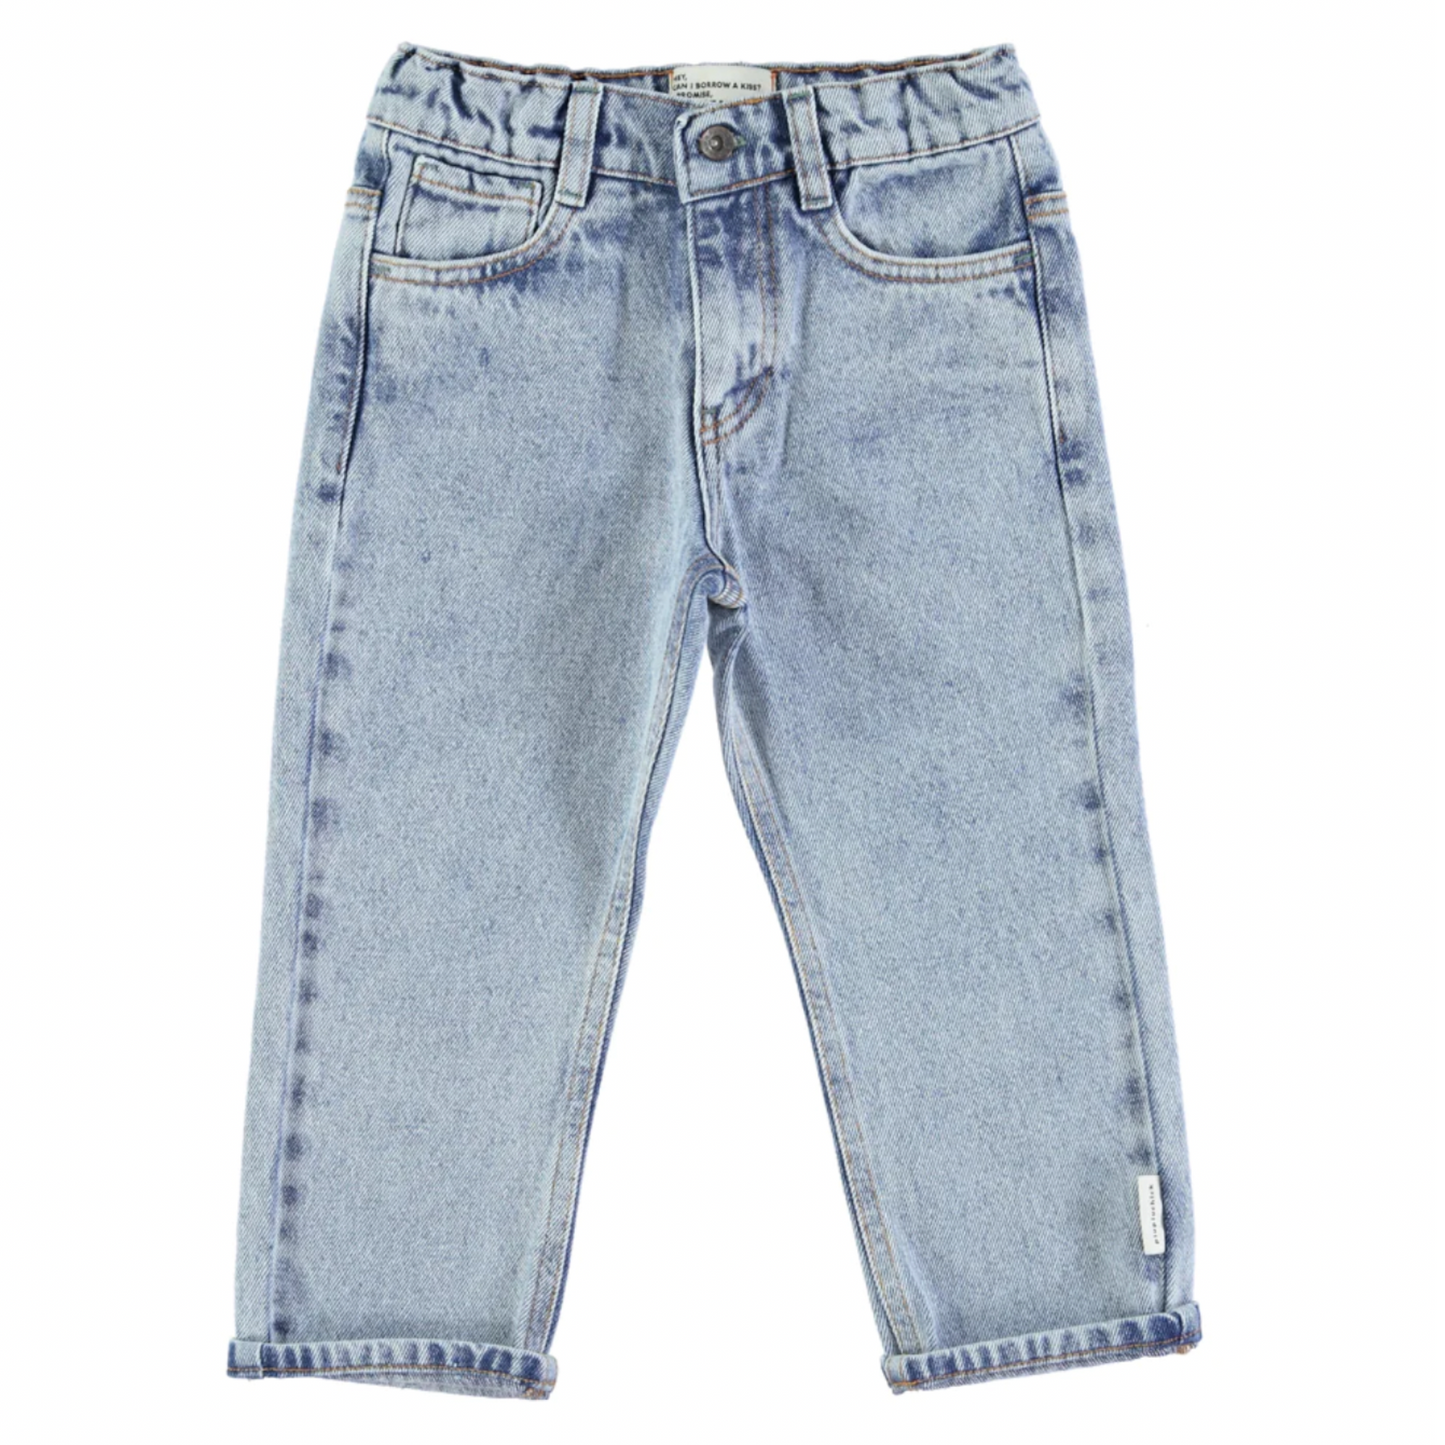 Jean | Délavé-Piu Piu Chick-Super Châtaigne-Pantalons, Leggins & Jeans : Product type